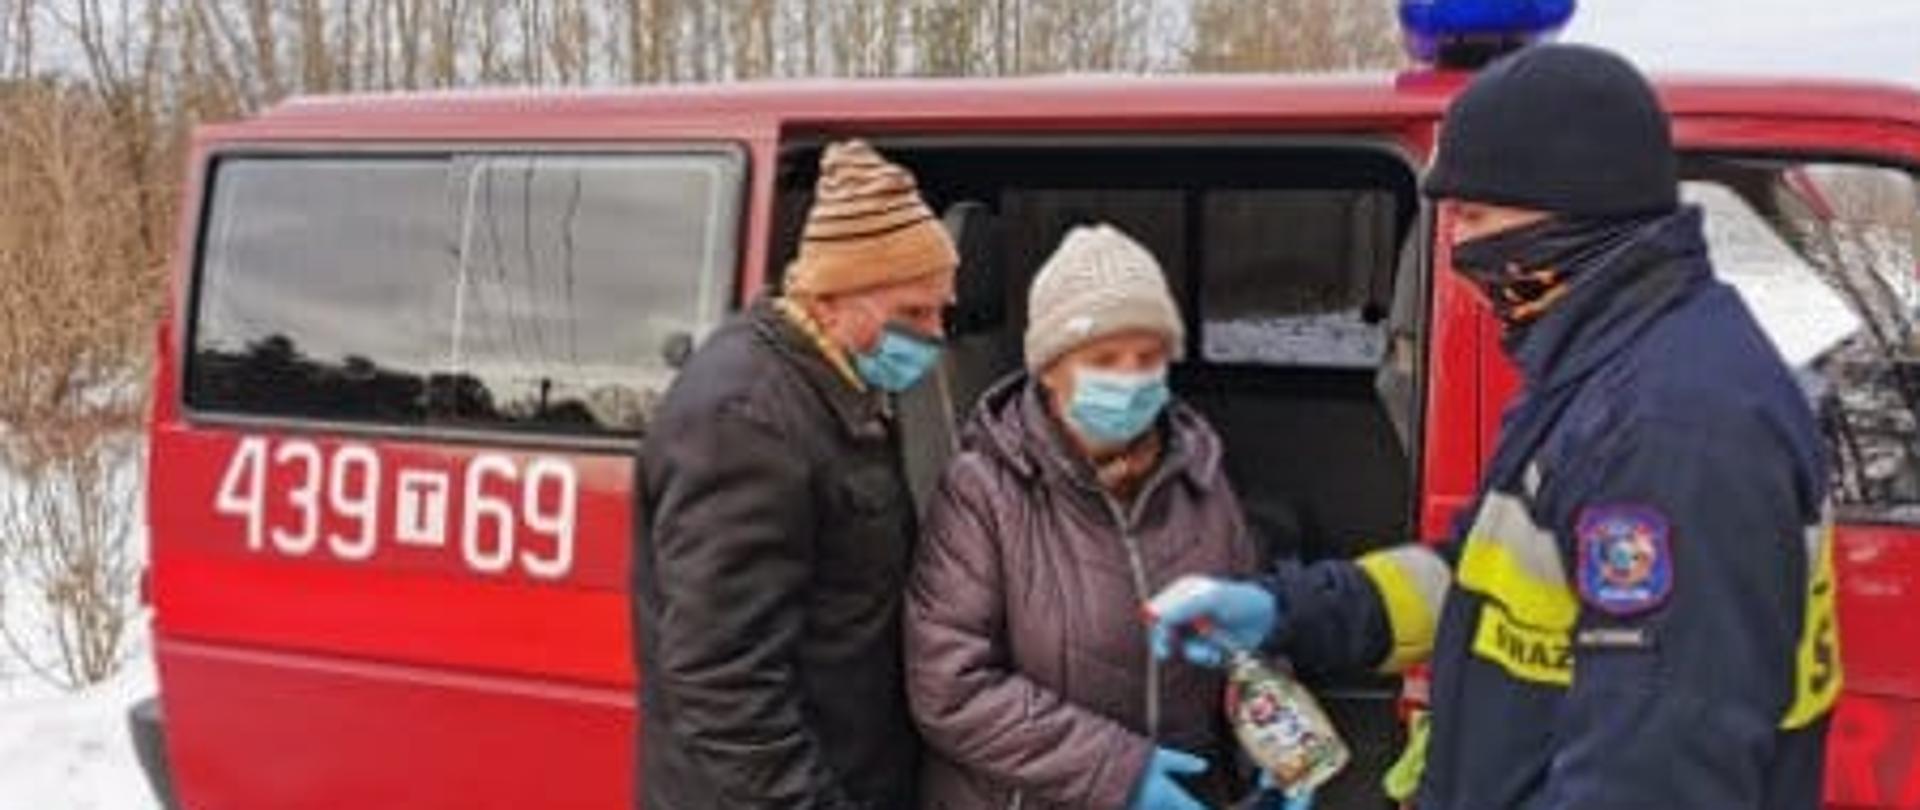 Strażak OSP Ruda Maleniecka pomaga wysiąść starszej kobiecie i starszemu mężczyźnie z samochodu strażackiego.